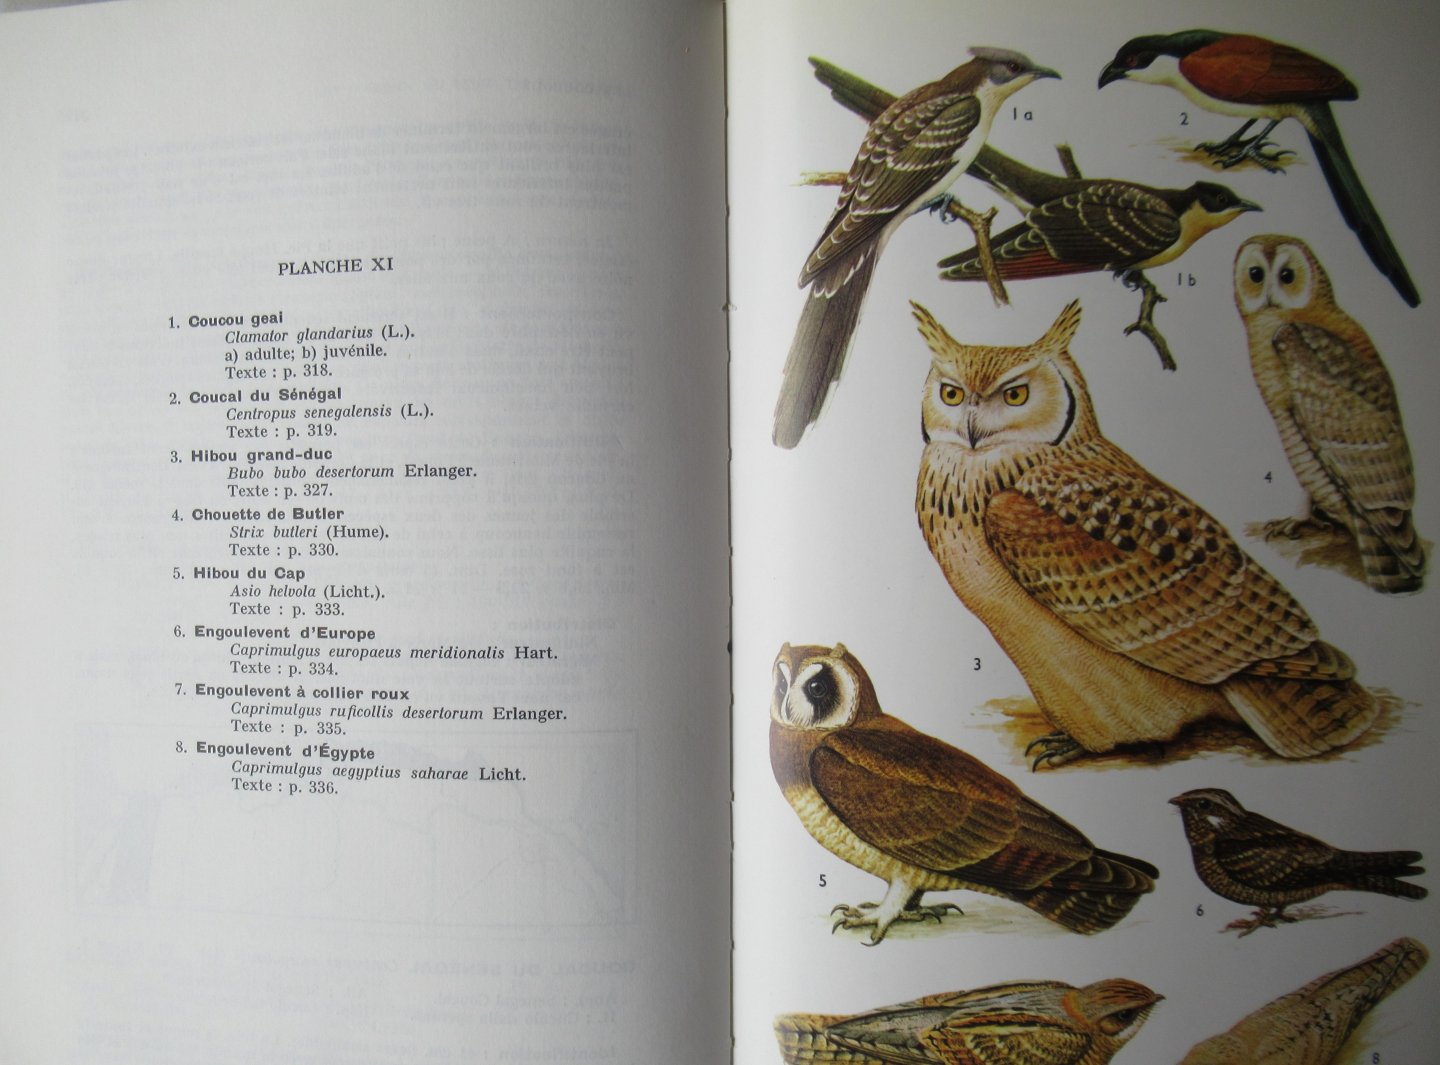 R.D. Etchécopar - F. Huë - Les Oiseaux du Nord de l' Afrique de la Mer Rouge aux Canaries